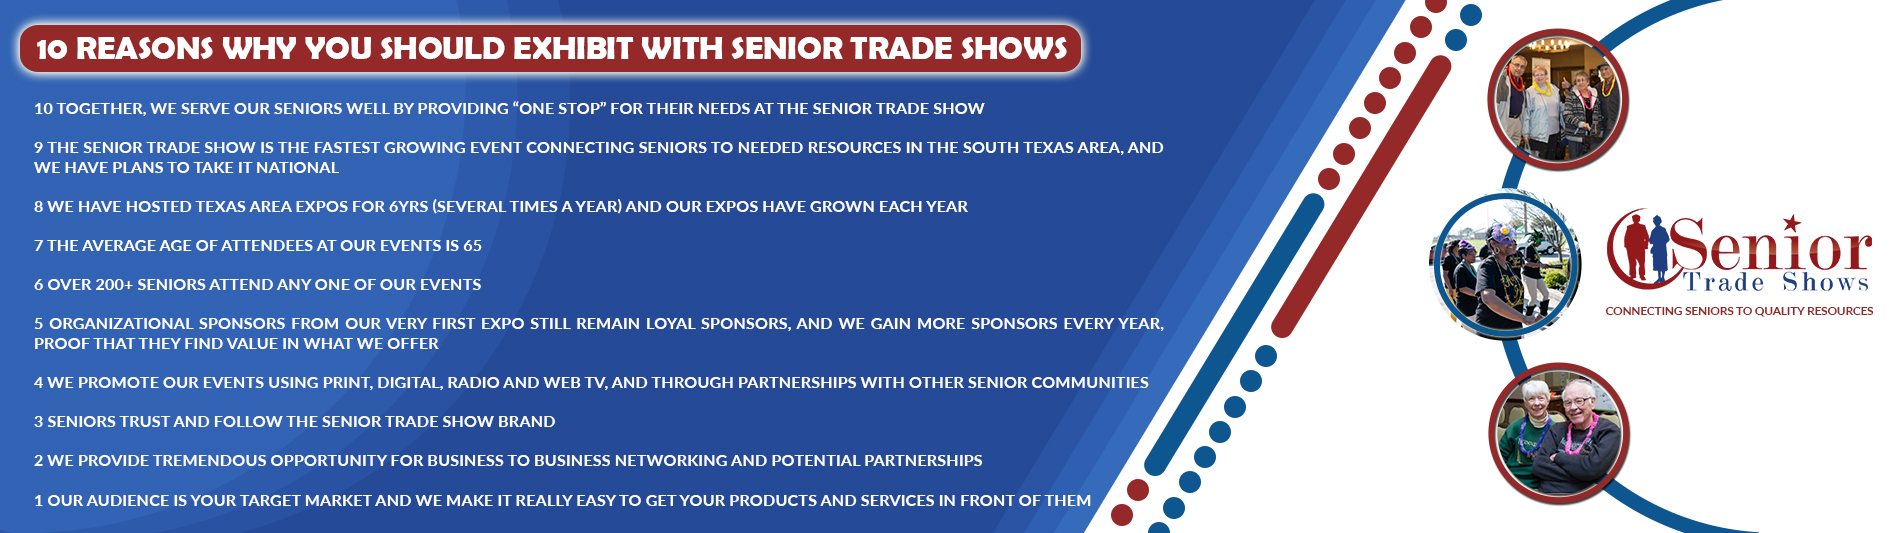 Senior Trade Shows info